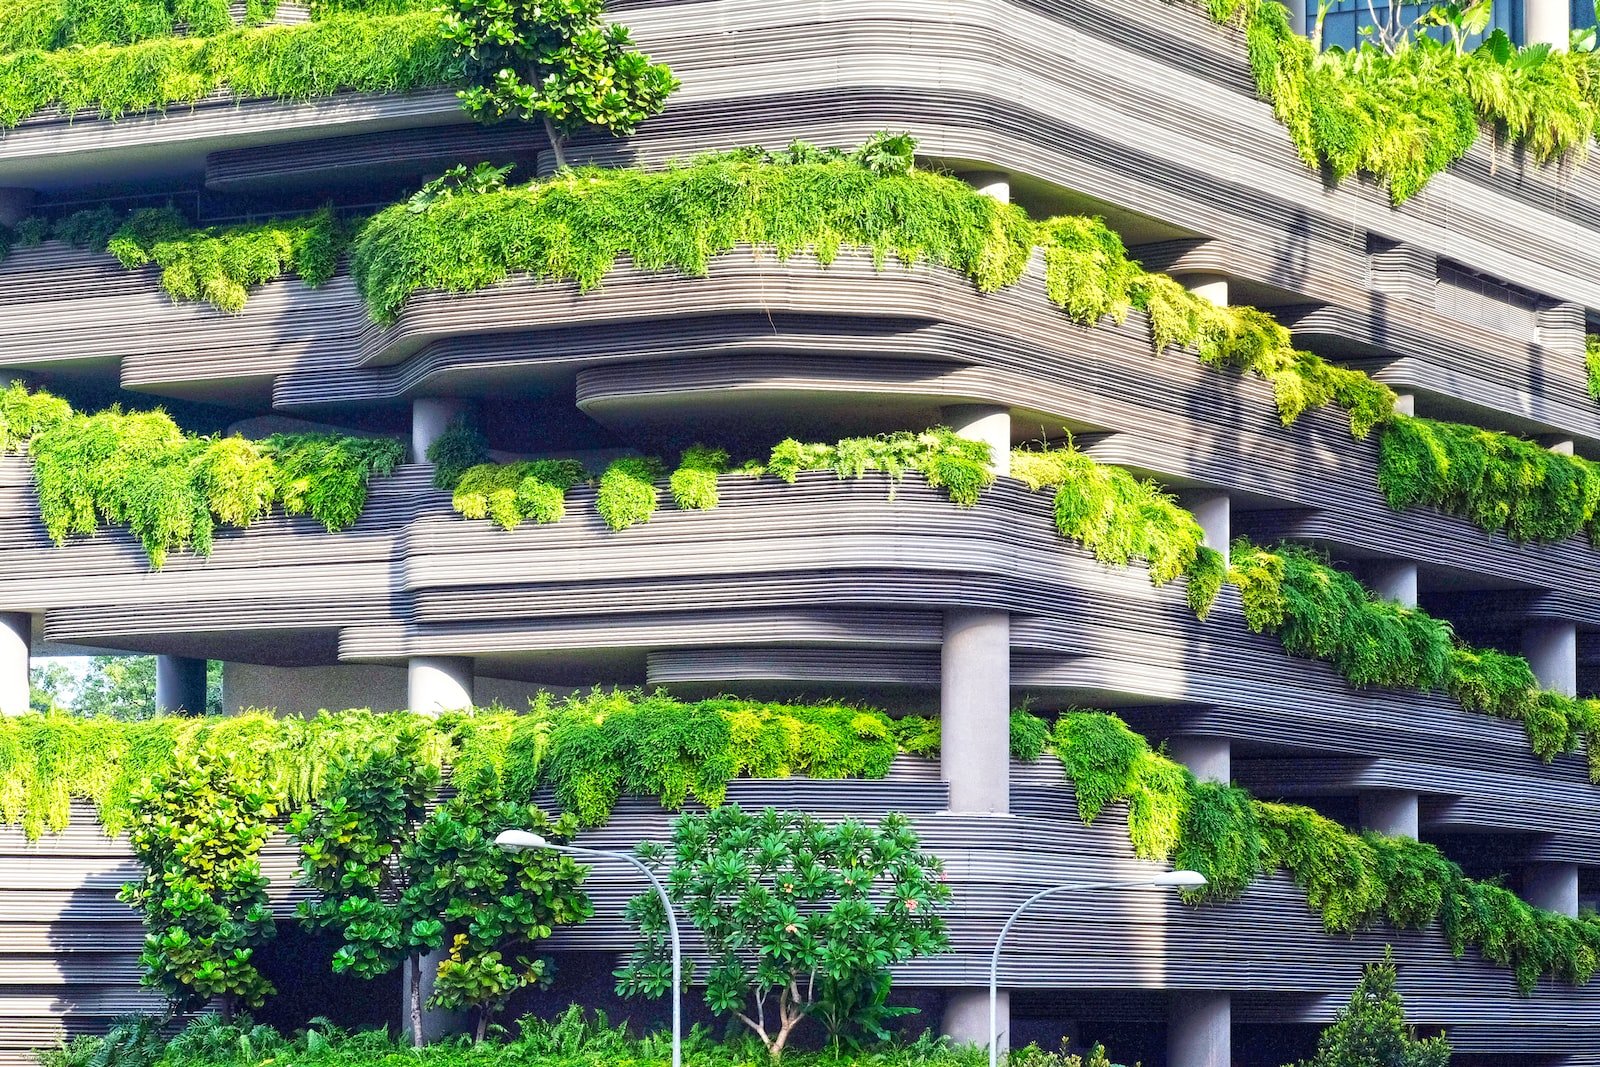 Economia Circular – Concreta está de volta: “A construção tem de ser mais sustentável”